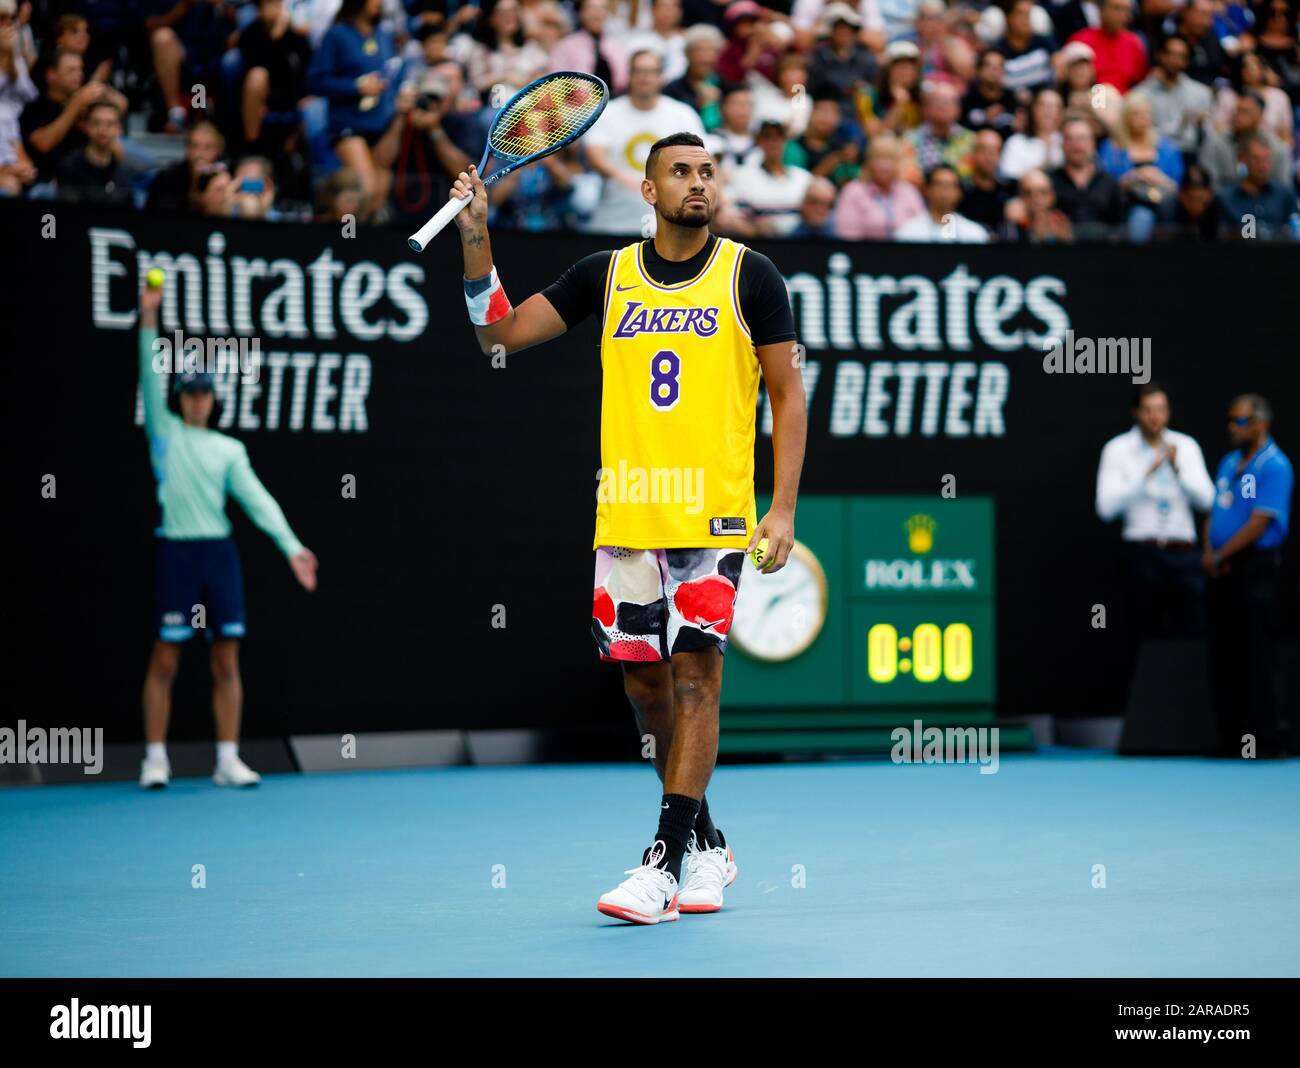 Nick KYRGIOS (AUS) lleva una camiseta de los Lakers para conmemorar el paso  de Kobe Bryant durante una sesión de calentamiento antes de su partido  contra Rafael Nadal Fotografía de stock -